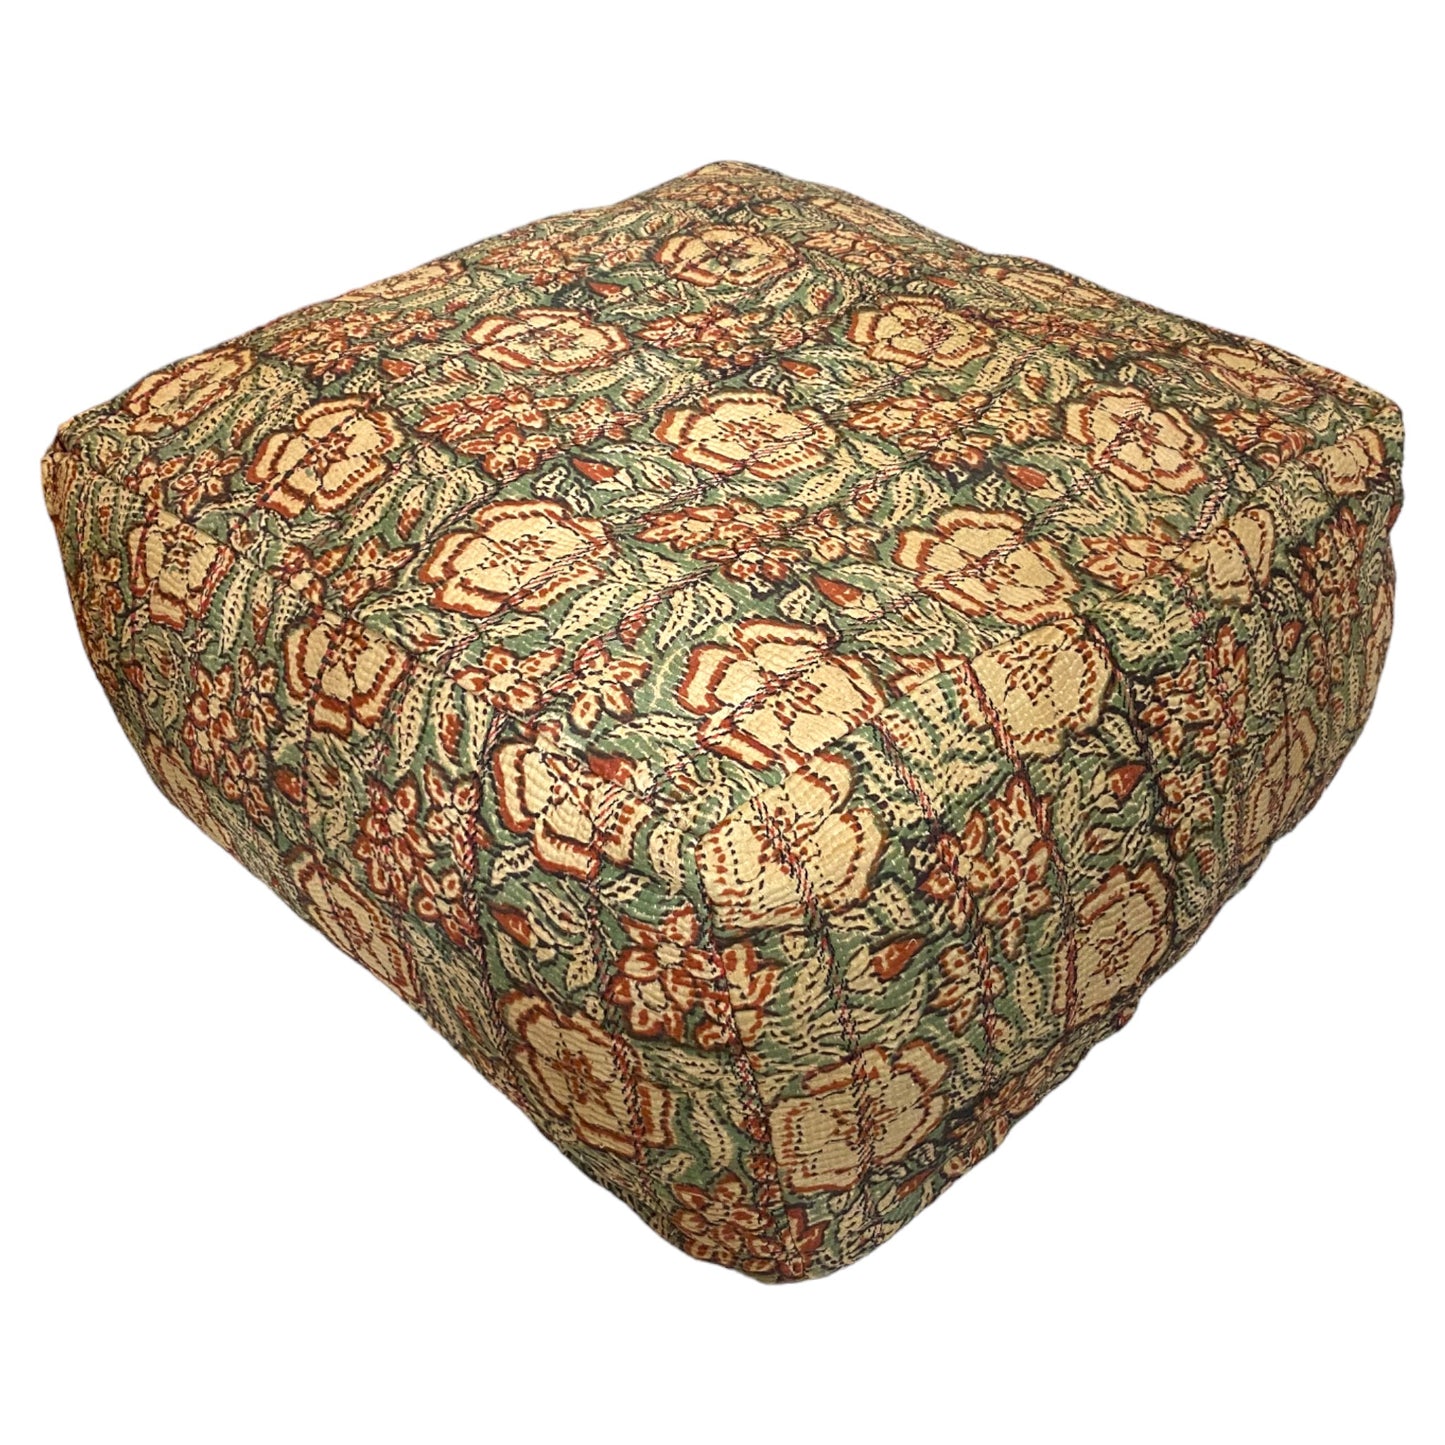 Green floral kantha floor cushion